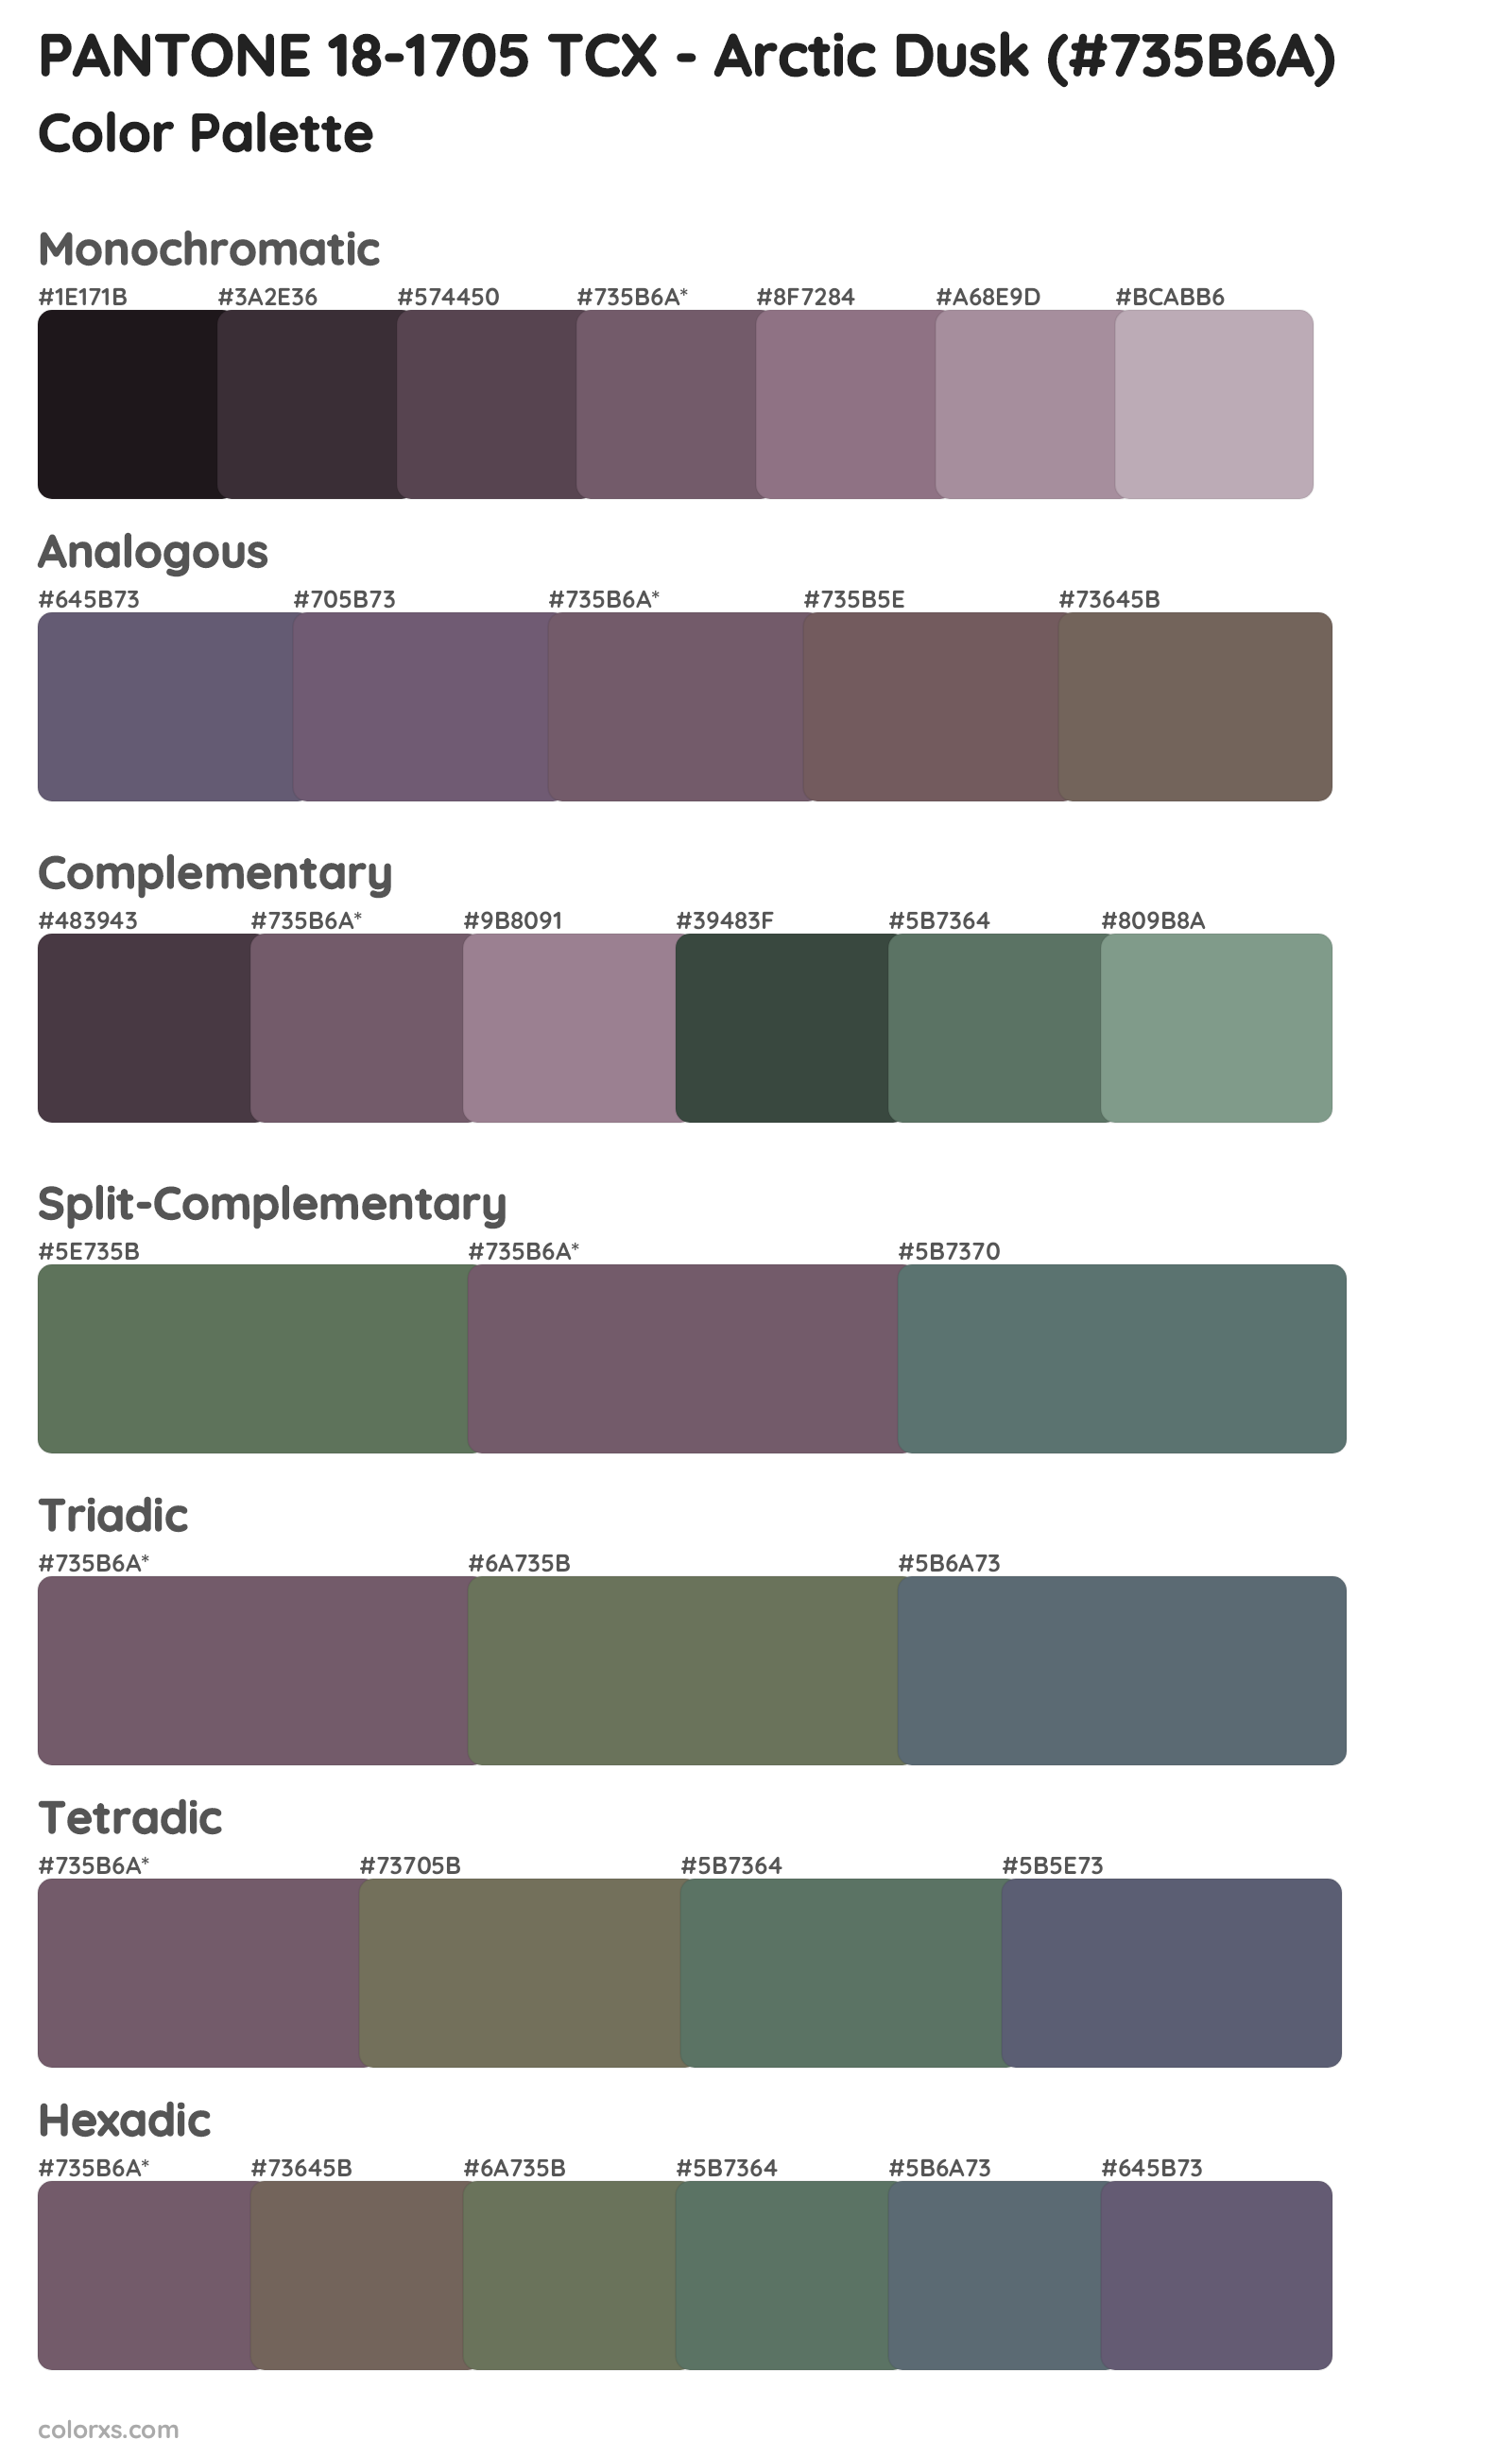 PANTONE 18-1705 TCX - Arctic Dusk Color Scheme Palettes